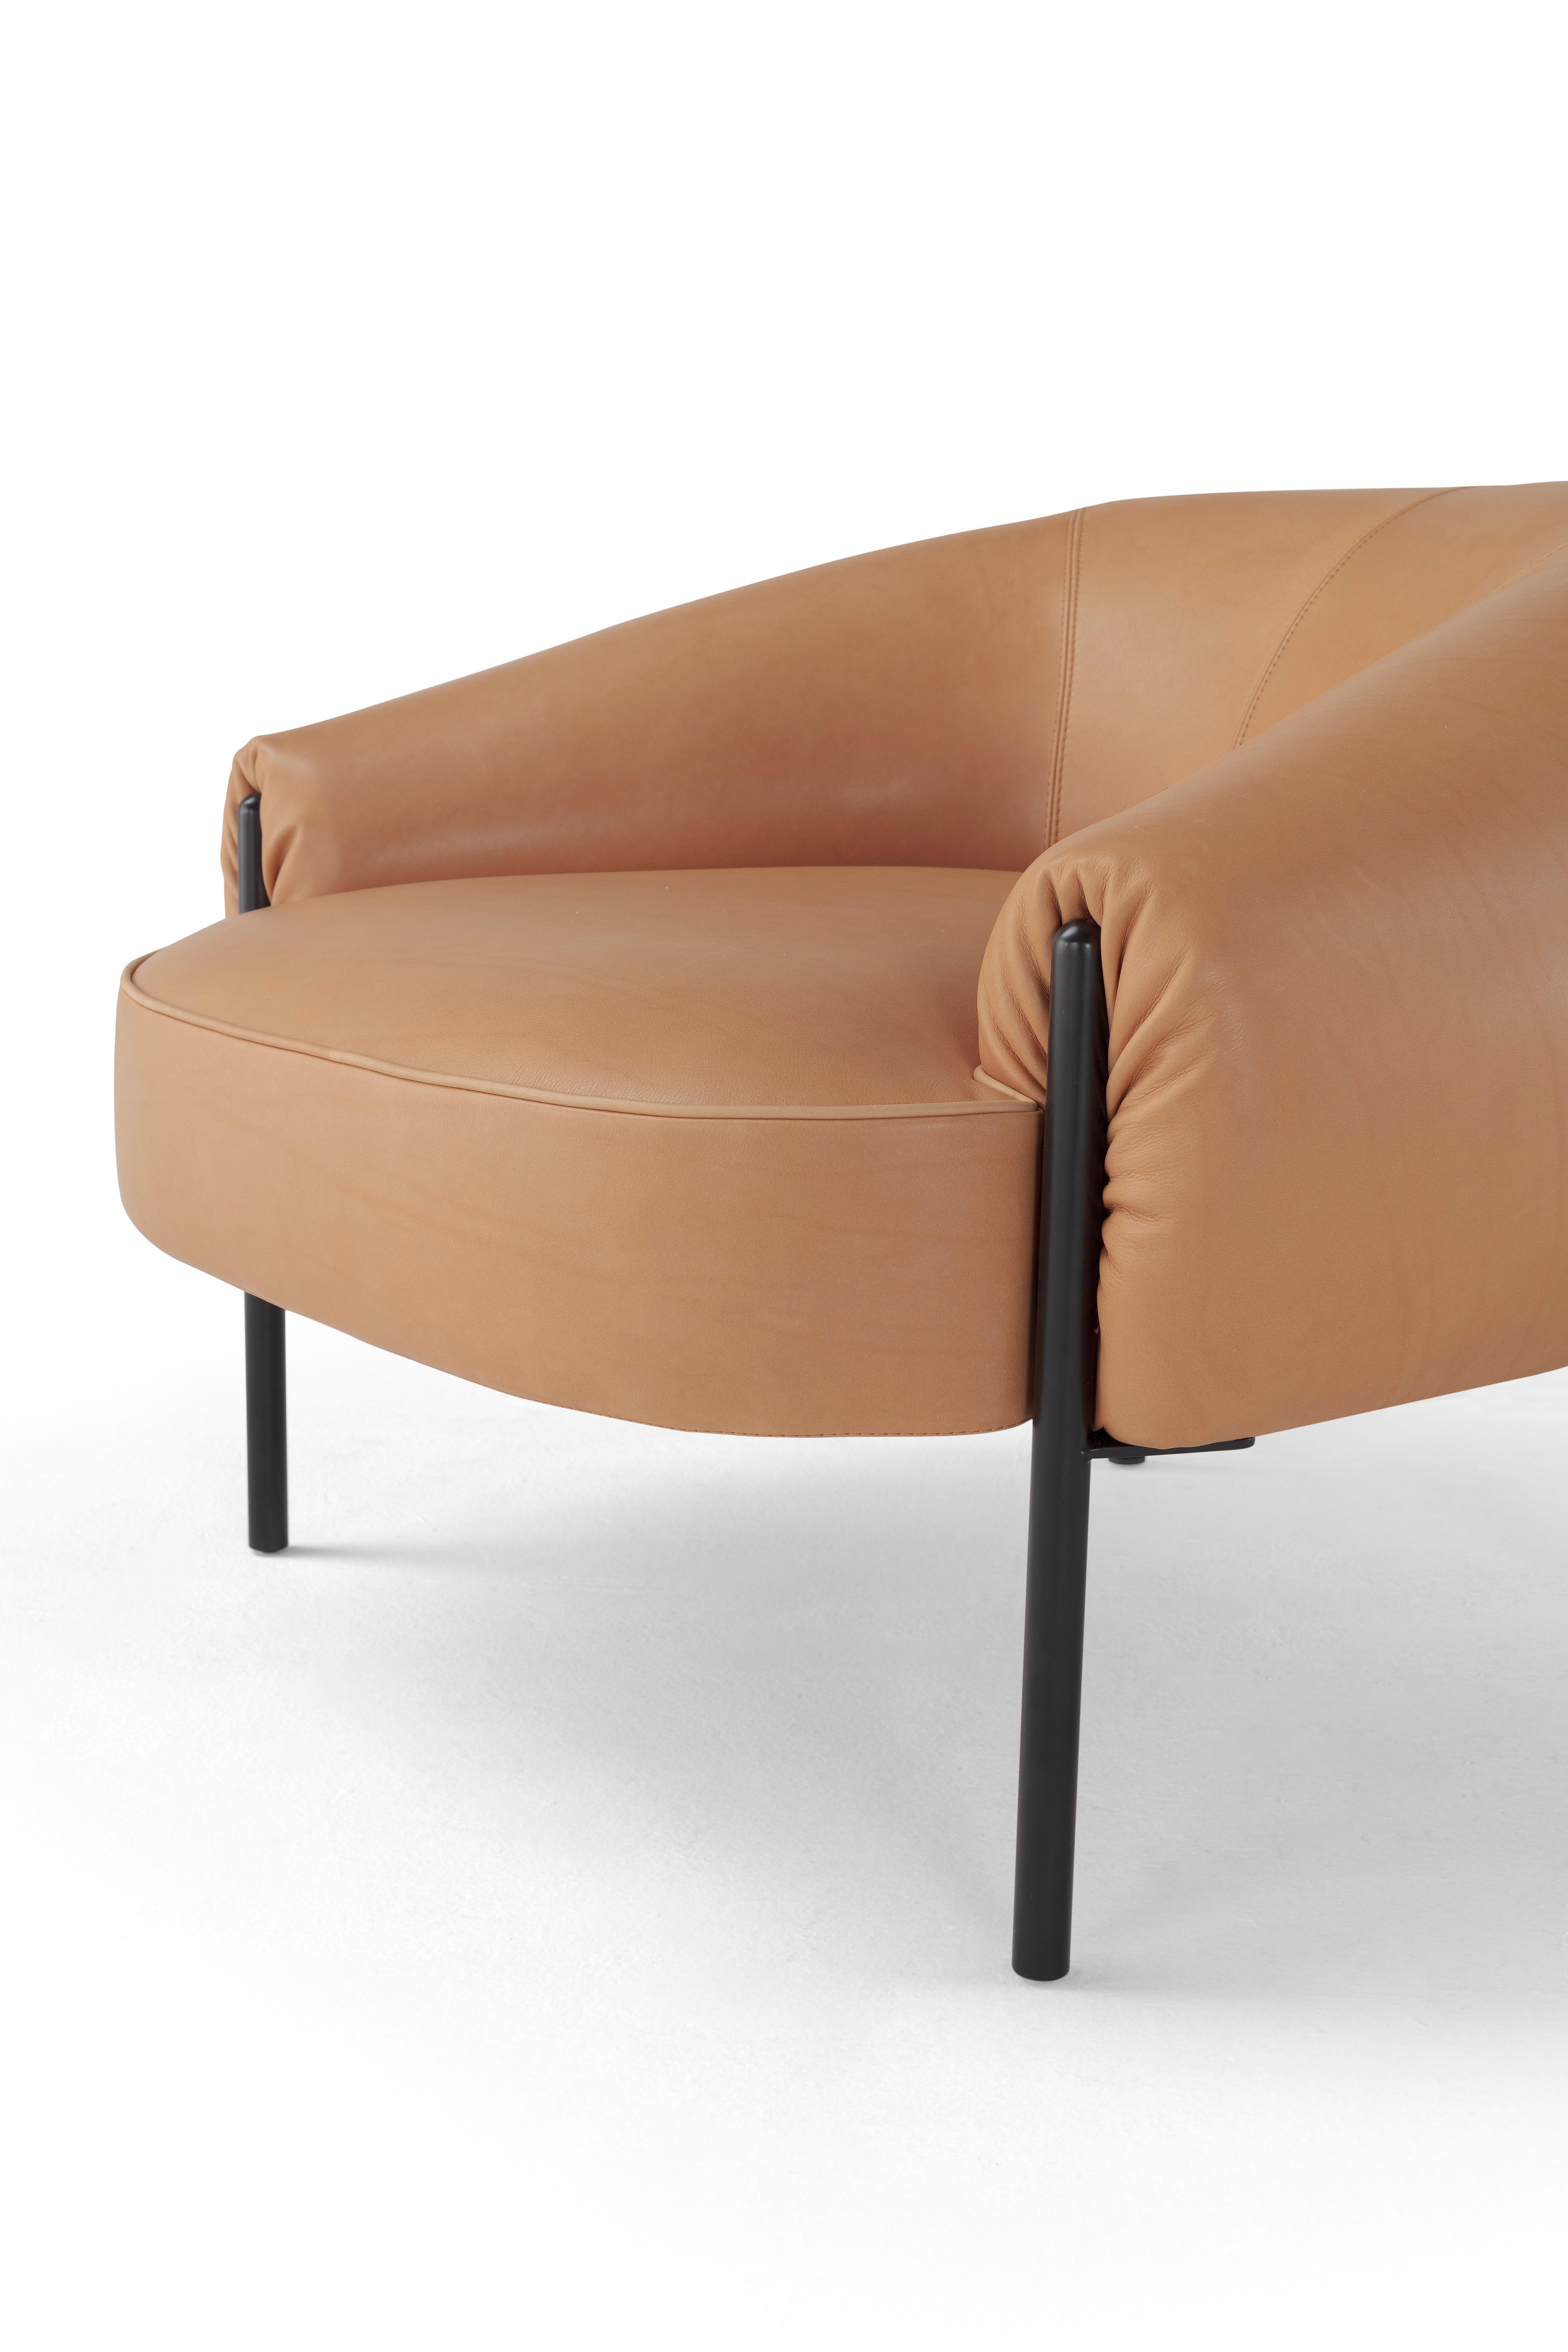 italien Ensemble contemporain 'Isola' by Amura Lab, fauteuil + pouf, cuir Daino 01 en vente